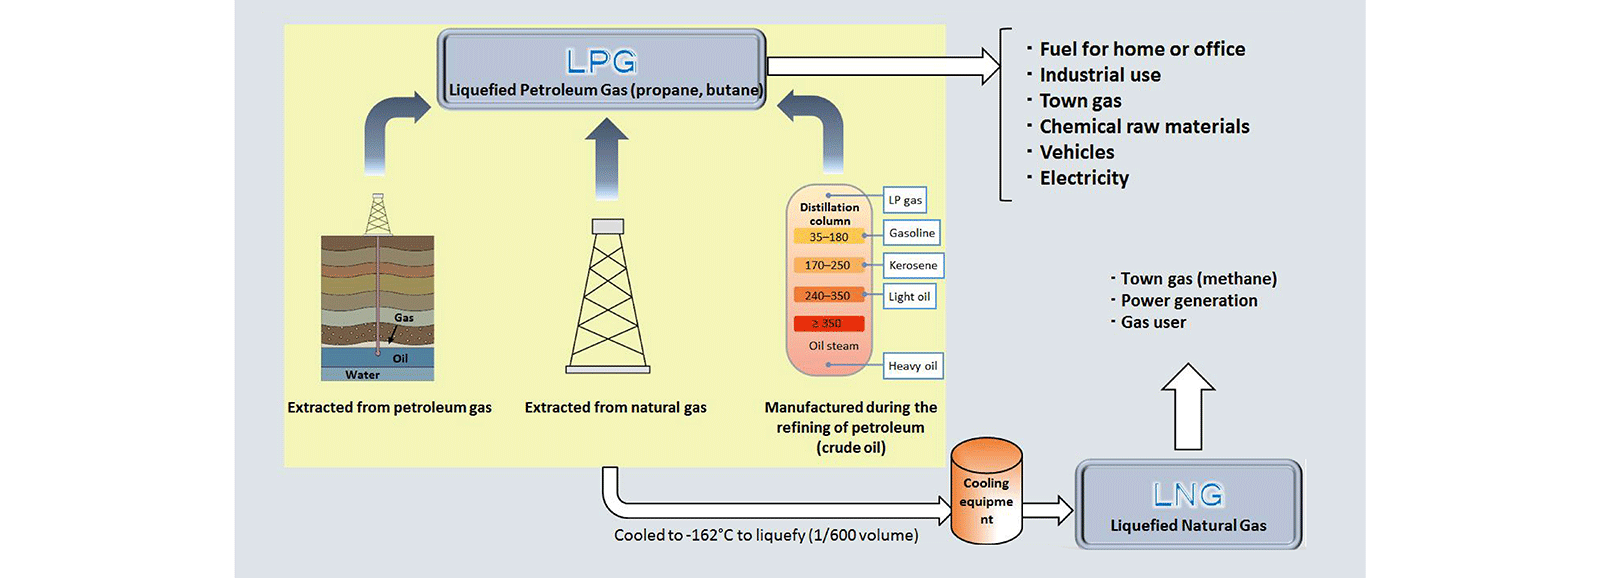 الغاز الطبيعي المسال (LNG) - غاز البترول المسال (LPG)